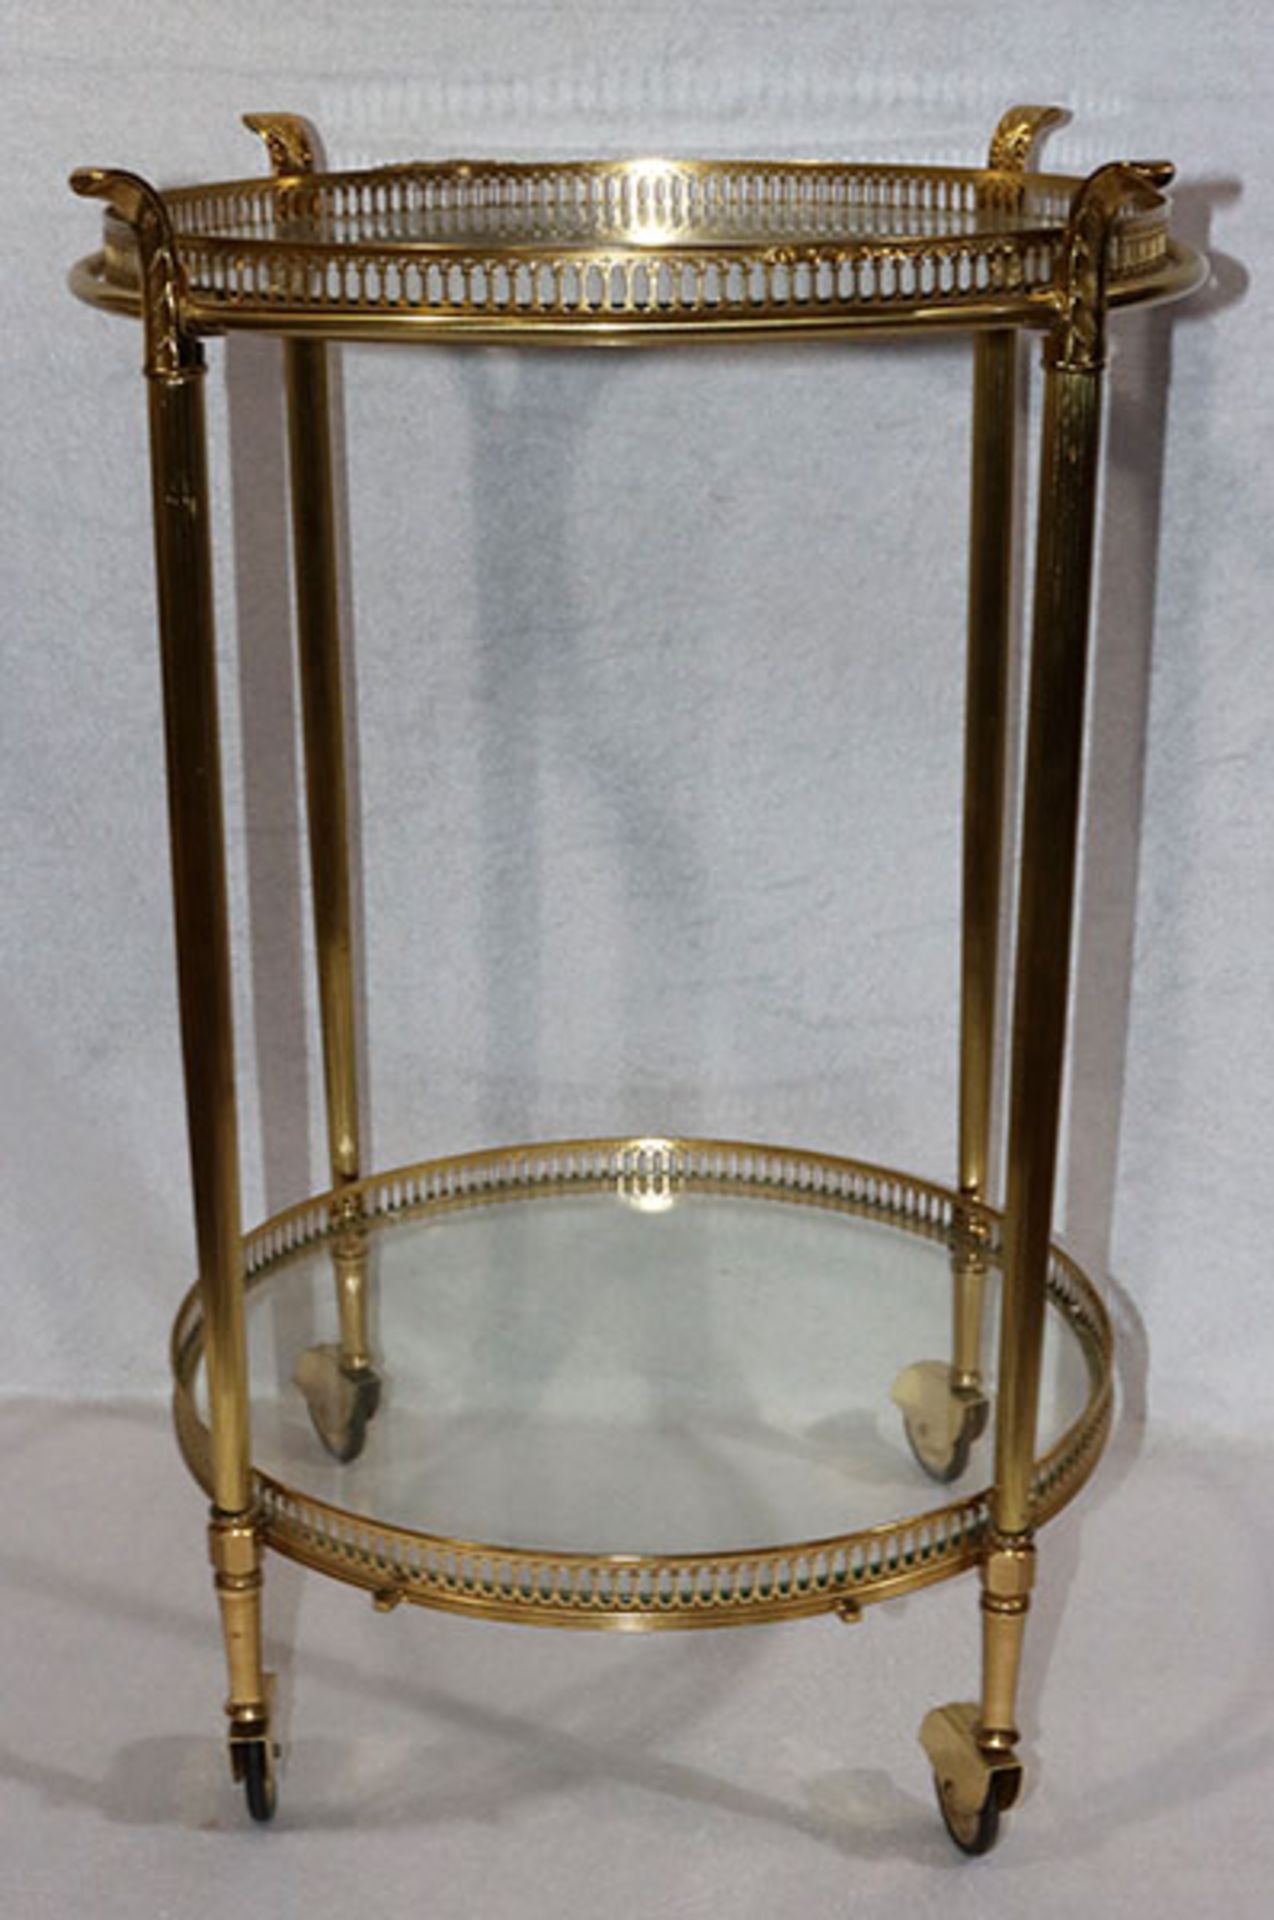 Runder Messing Teewagen auf 4 Rollen, abnehmbares Glastablett und Glasboden, H 67 cm, D 48 cm,